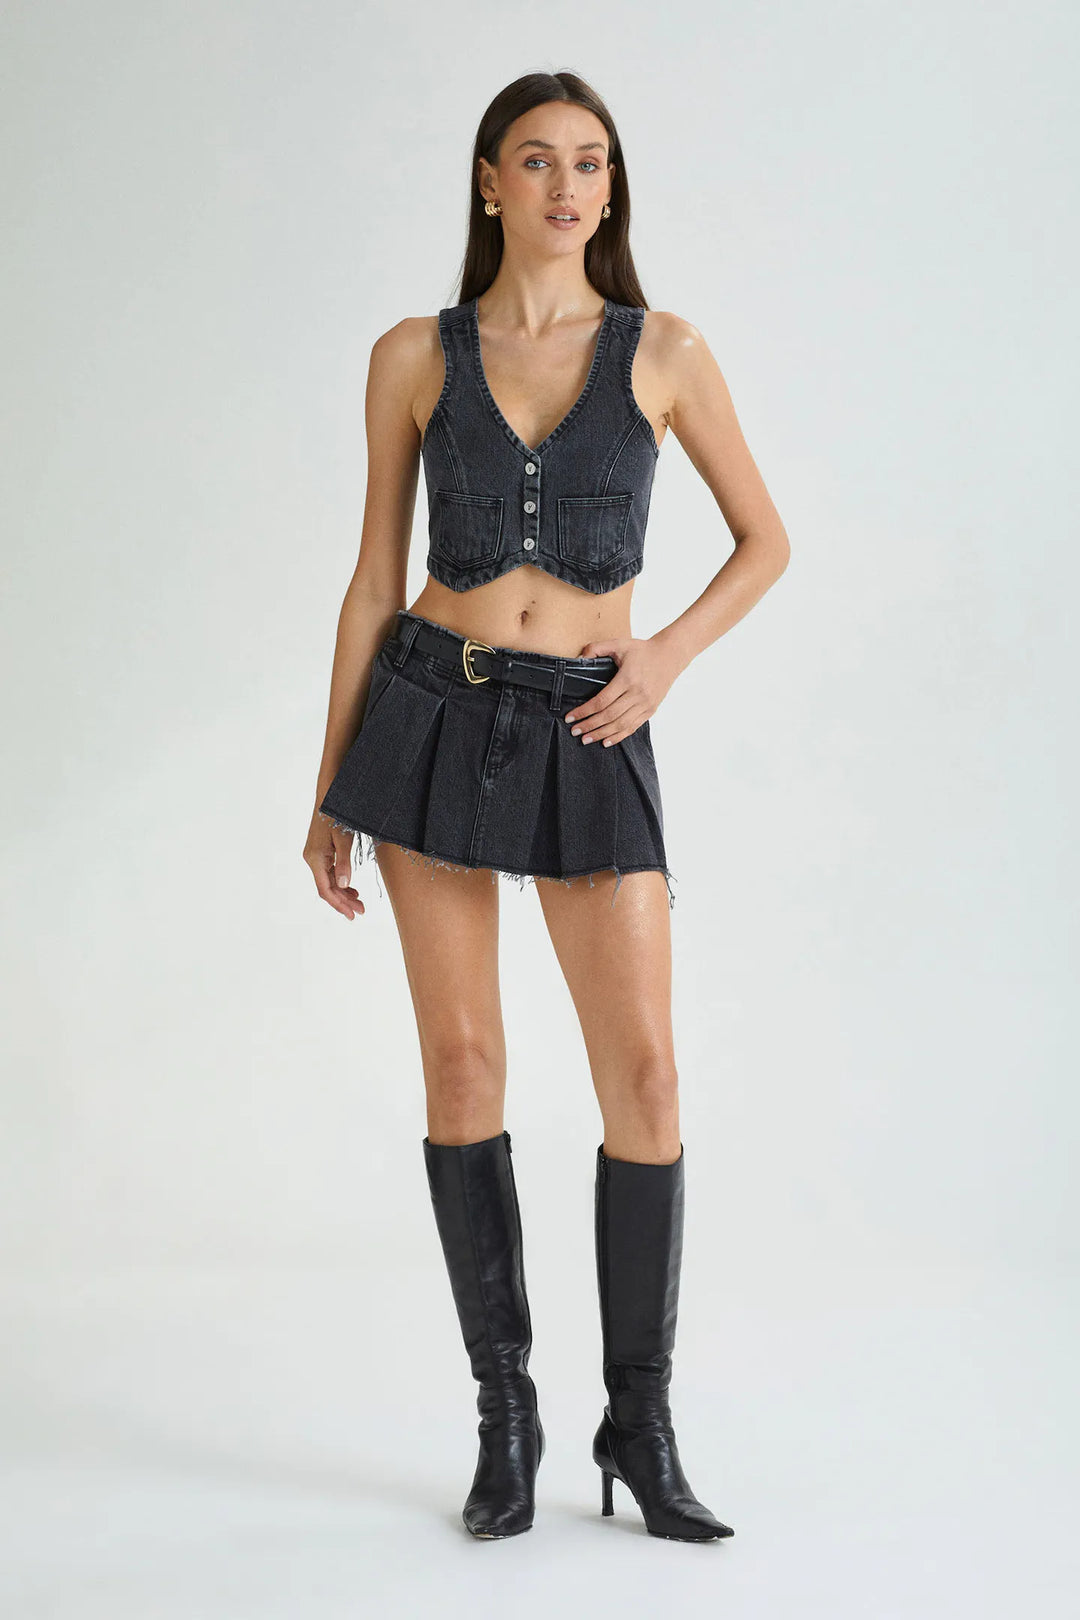 Abrand Pleated Mini Skirt - Chloe Black Washed